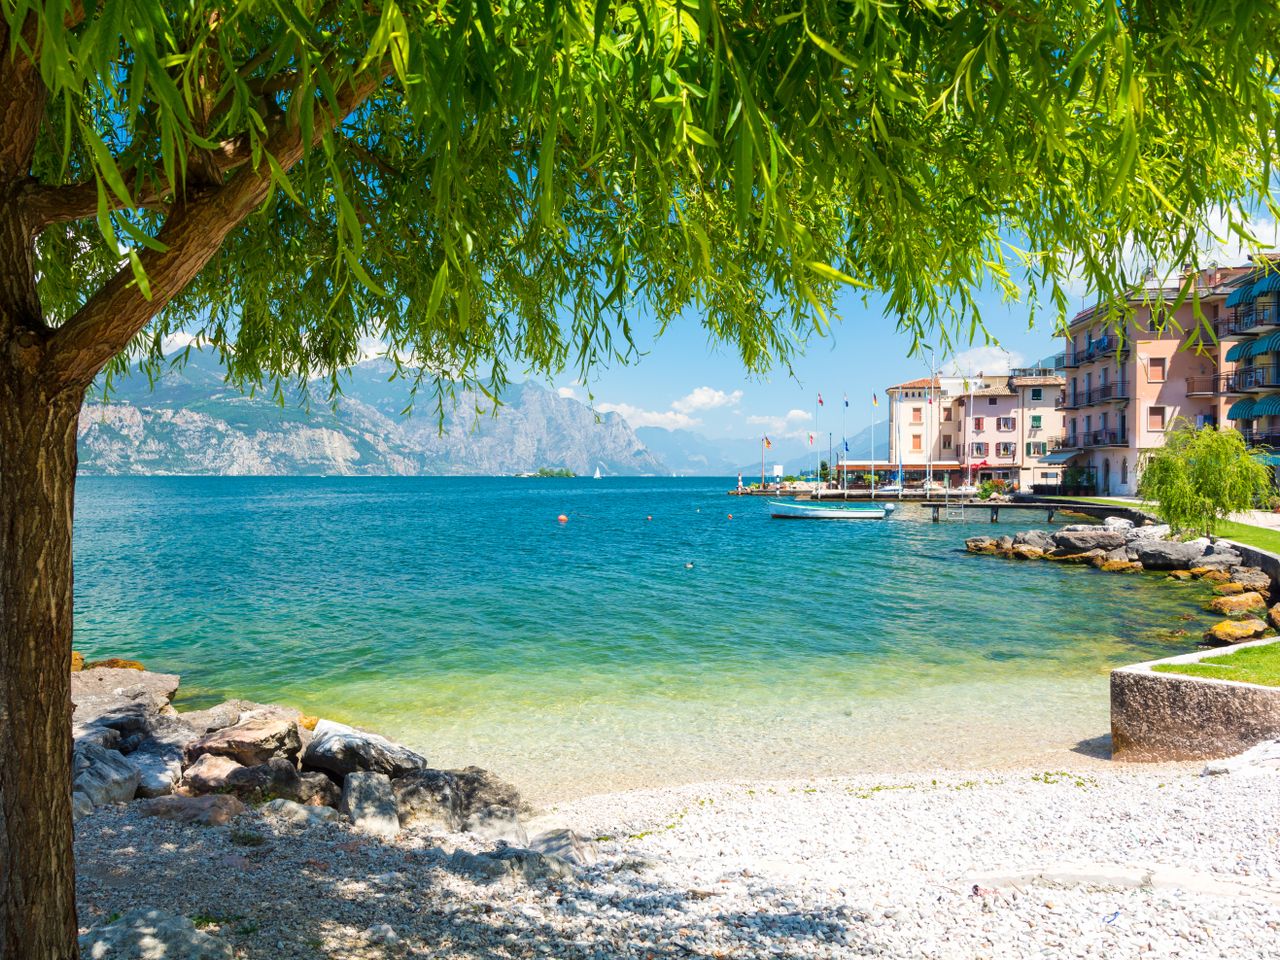 5 traumhafte Tage in Lazise am Gardasee mit Frühstück